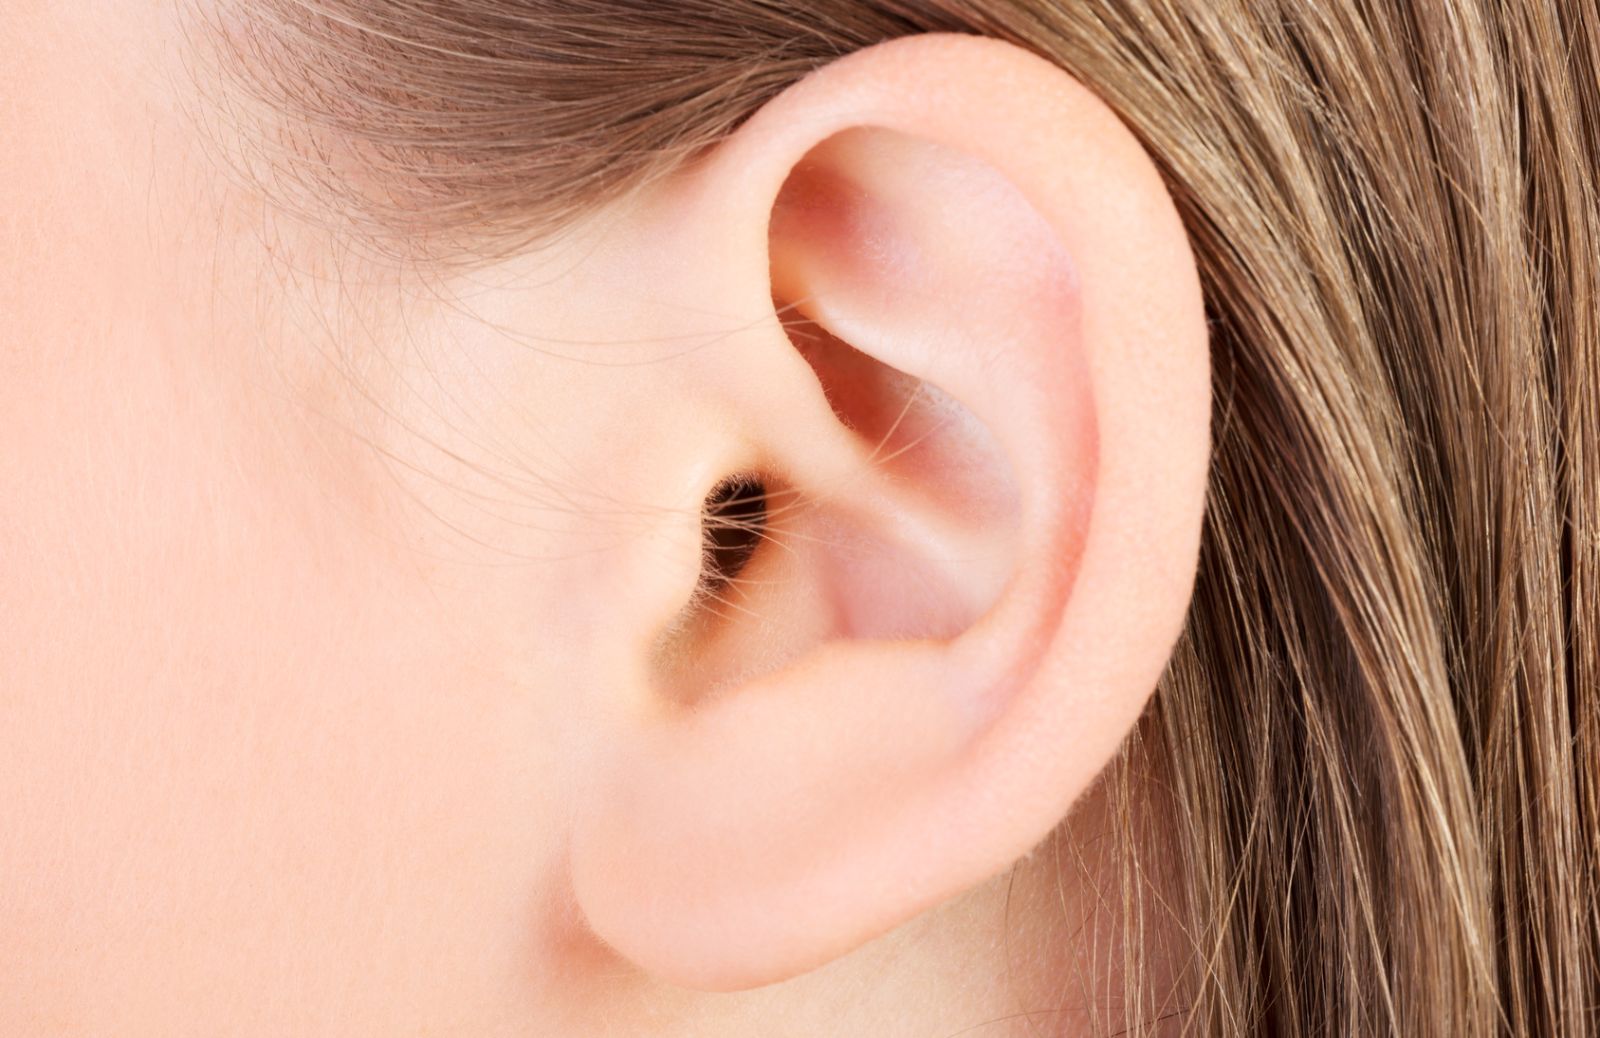 Come correggere le orecchie a sventola senza chirurgia invasiva